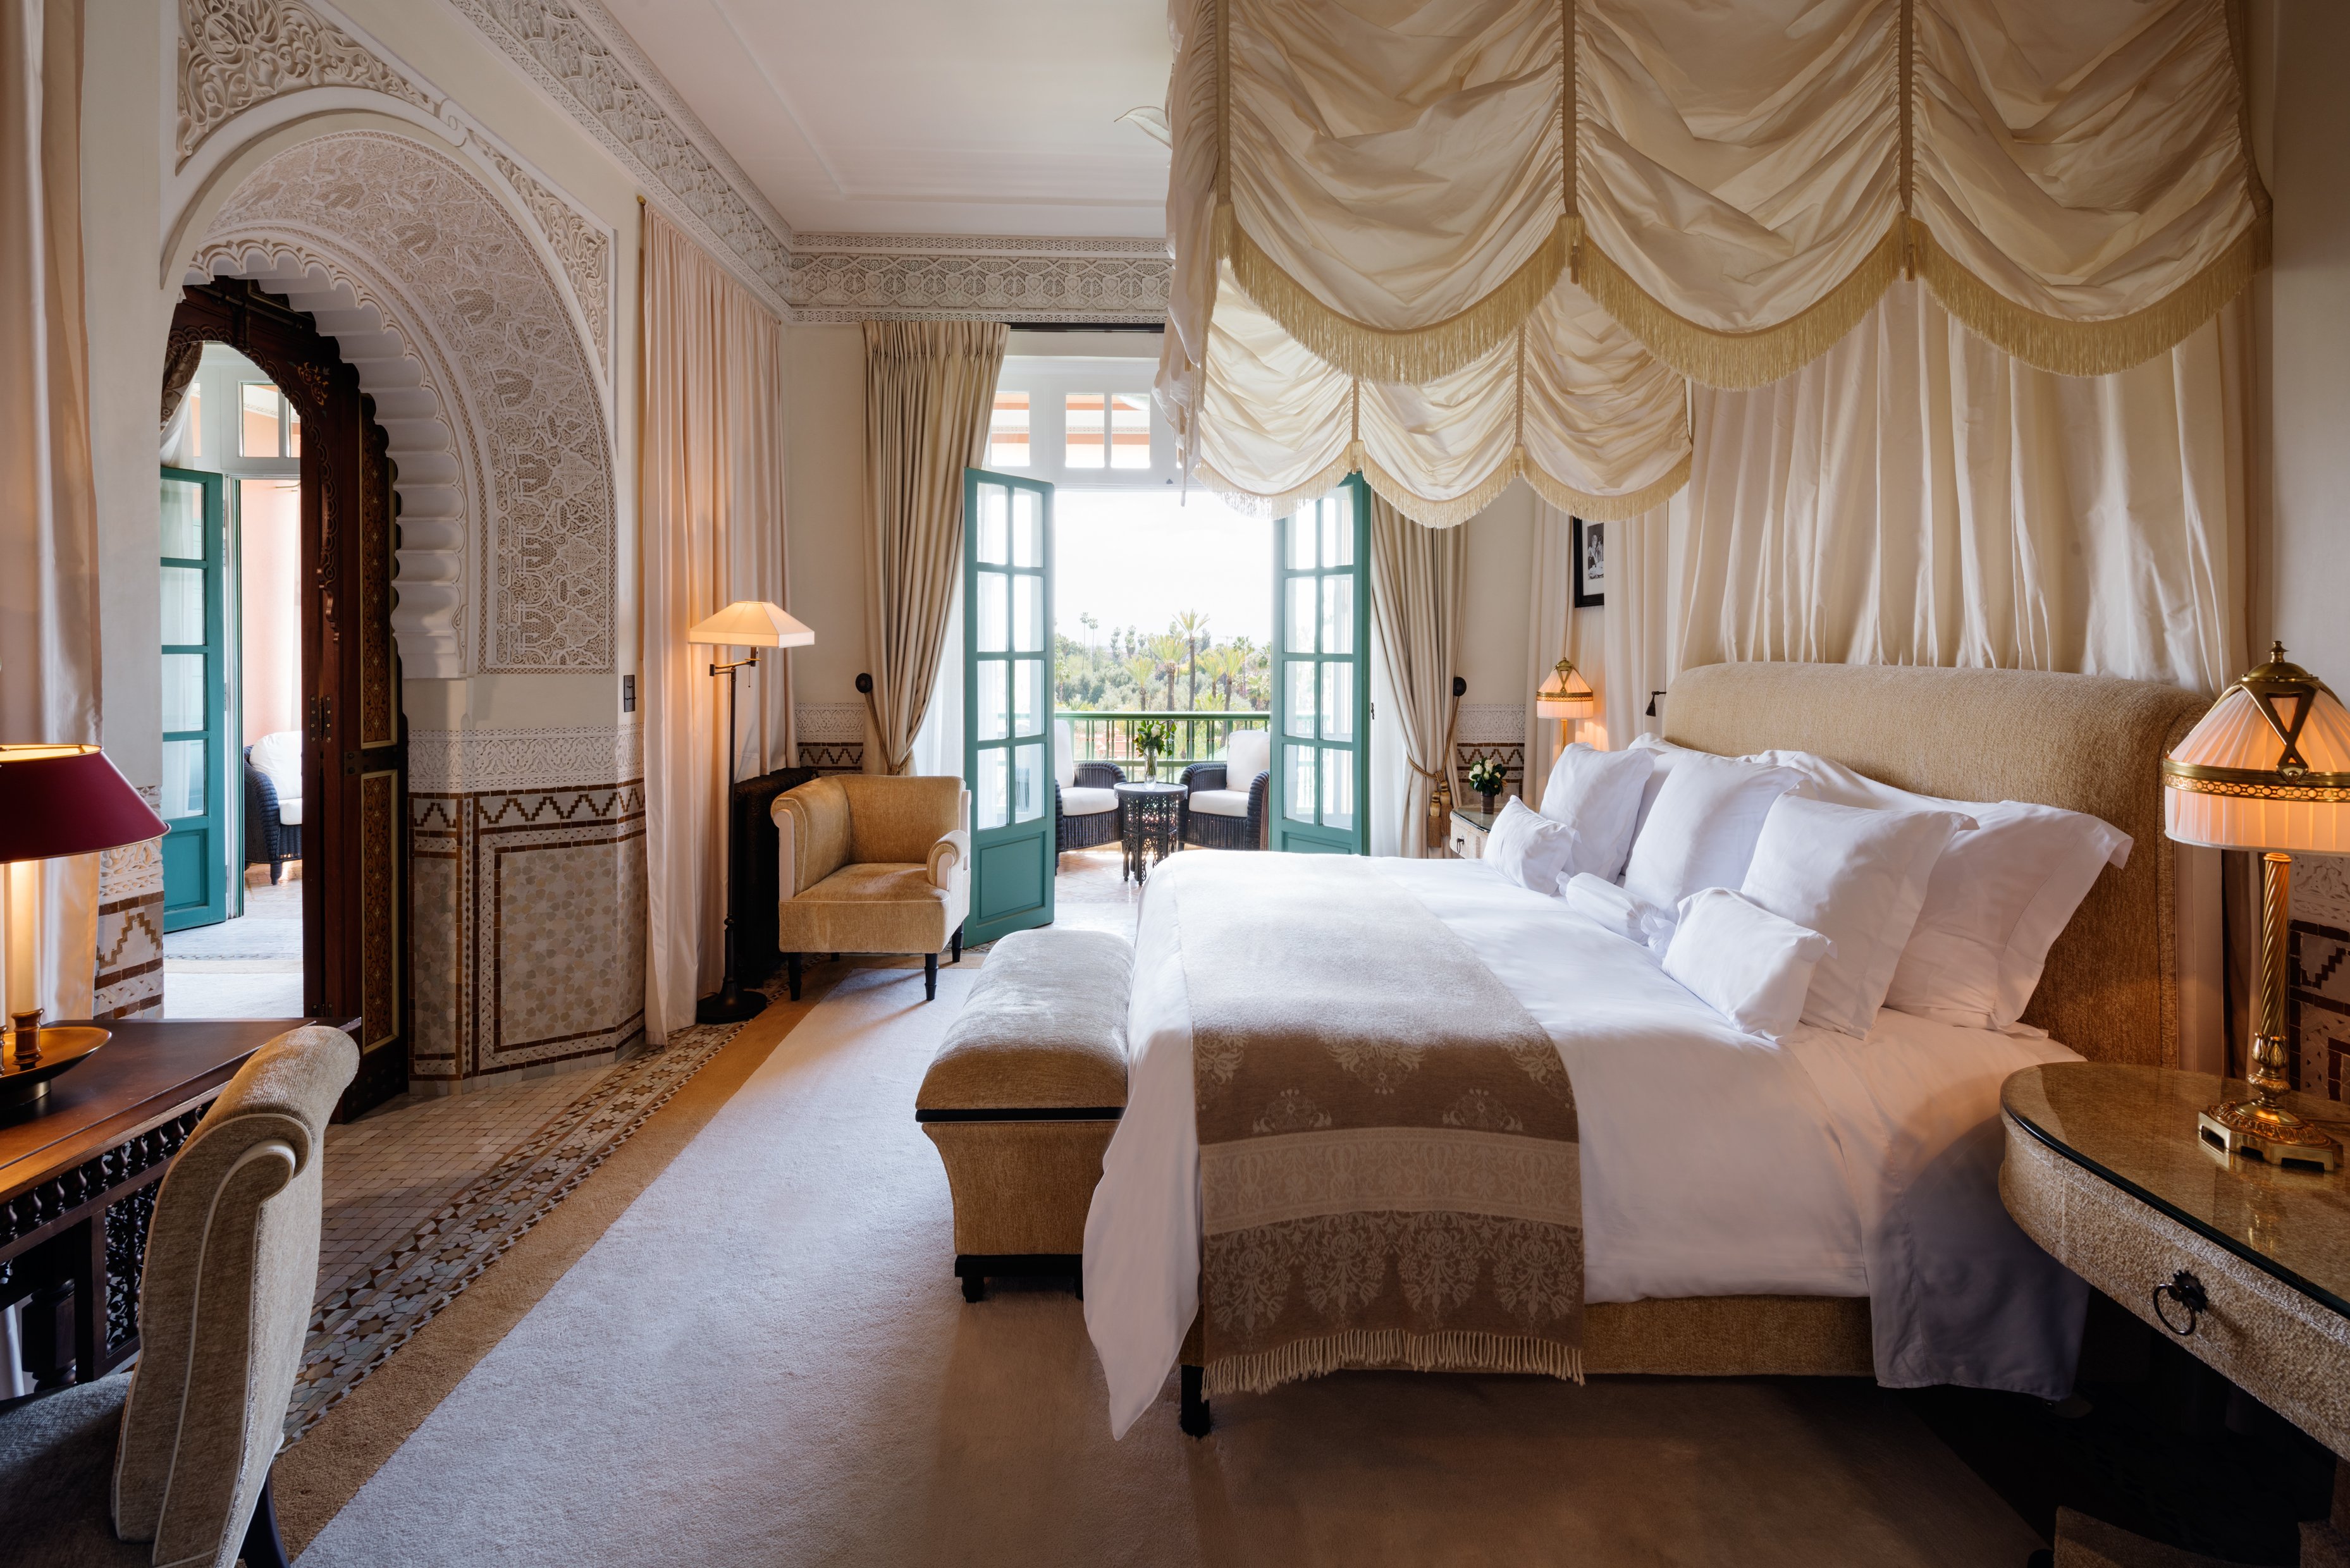 La Mamounia - Évaluations de l'hôtel 5 étoiles à Marrakech